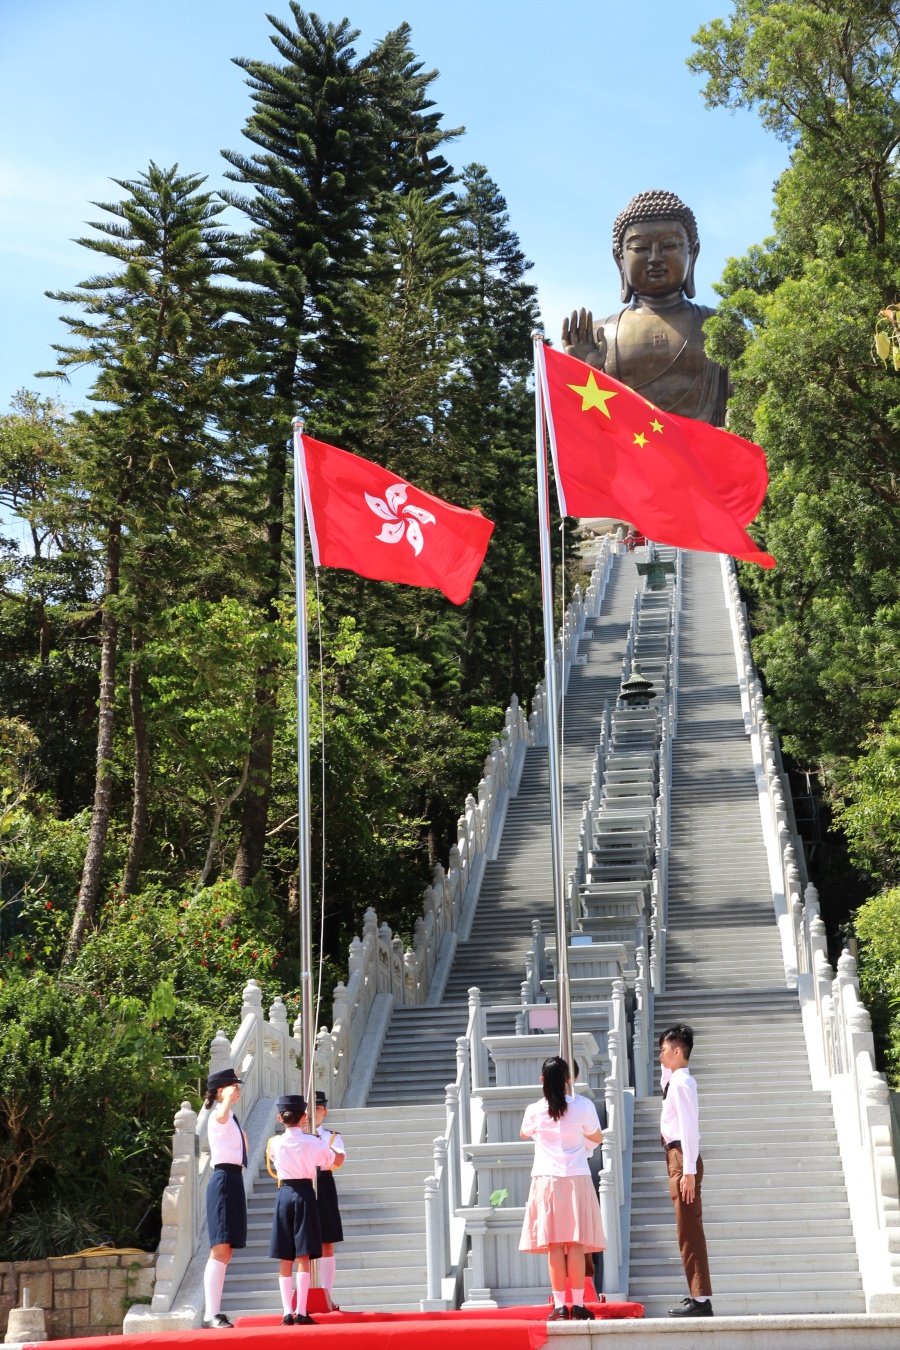 升旗队升挂中华人民共和国国旗、香港特别行政区区旗。香港佛教联合会